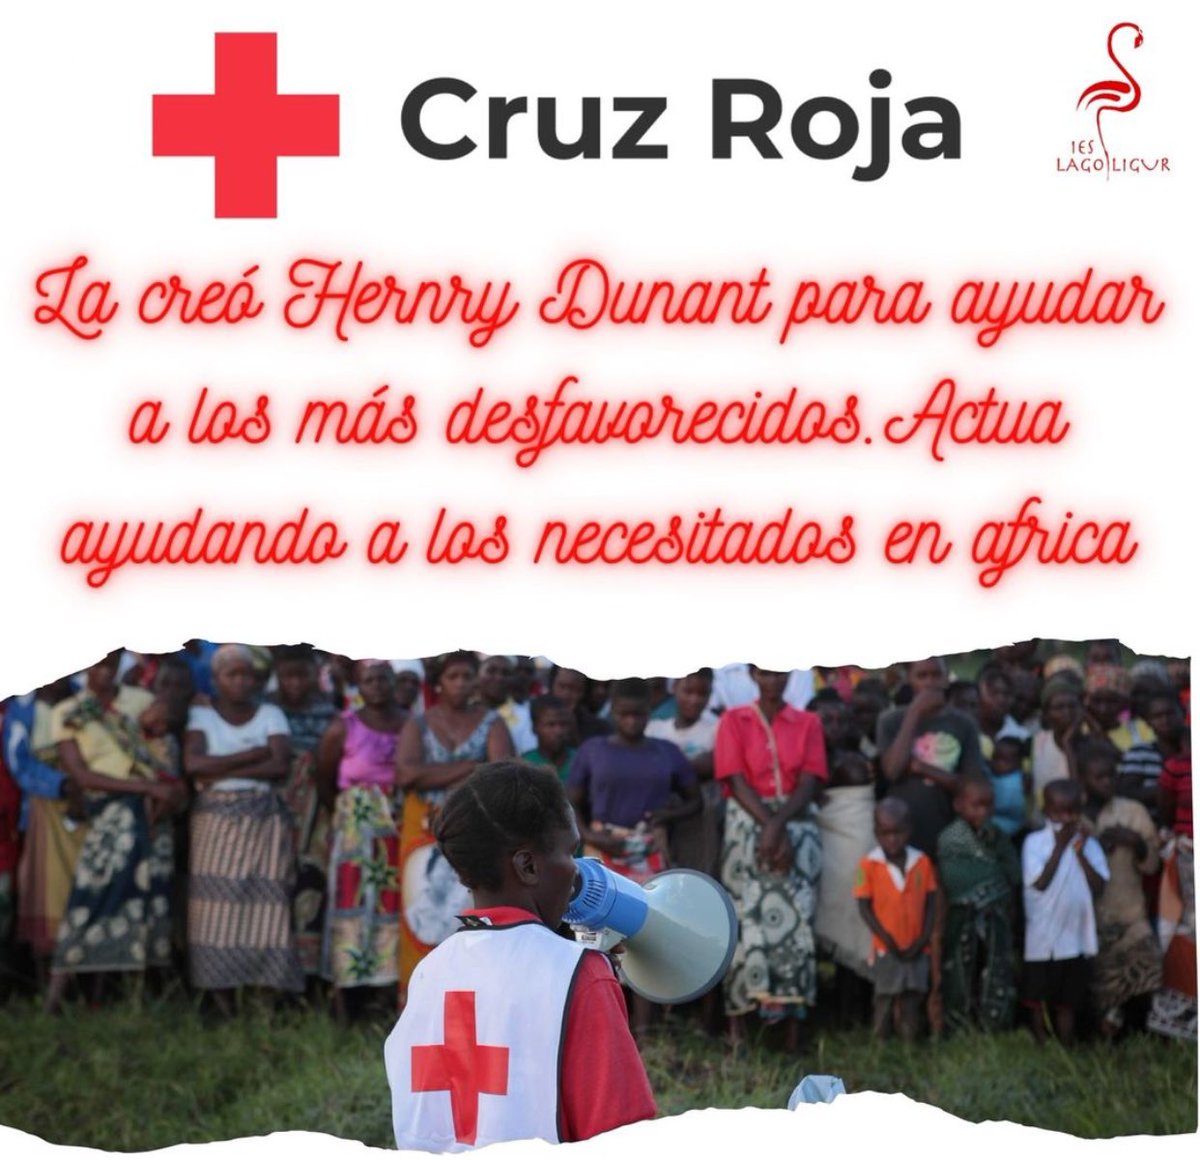 Mañana 8 de mayo es el Día Mundial de la Cruz Roja, el alumnado de 1ºFPB del IES Lago Ligur a realizado esta cartelería para celebrarlo @cruzrojaesp @CruzRojaAND @CruzRojaSevilla @CruzRojaFP #ieslagoligur #islamayor #cruzroja